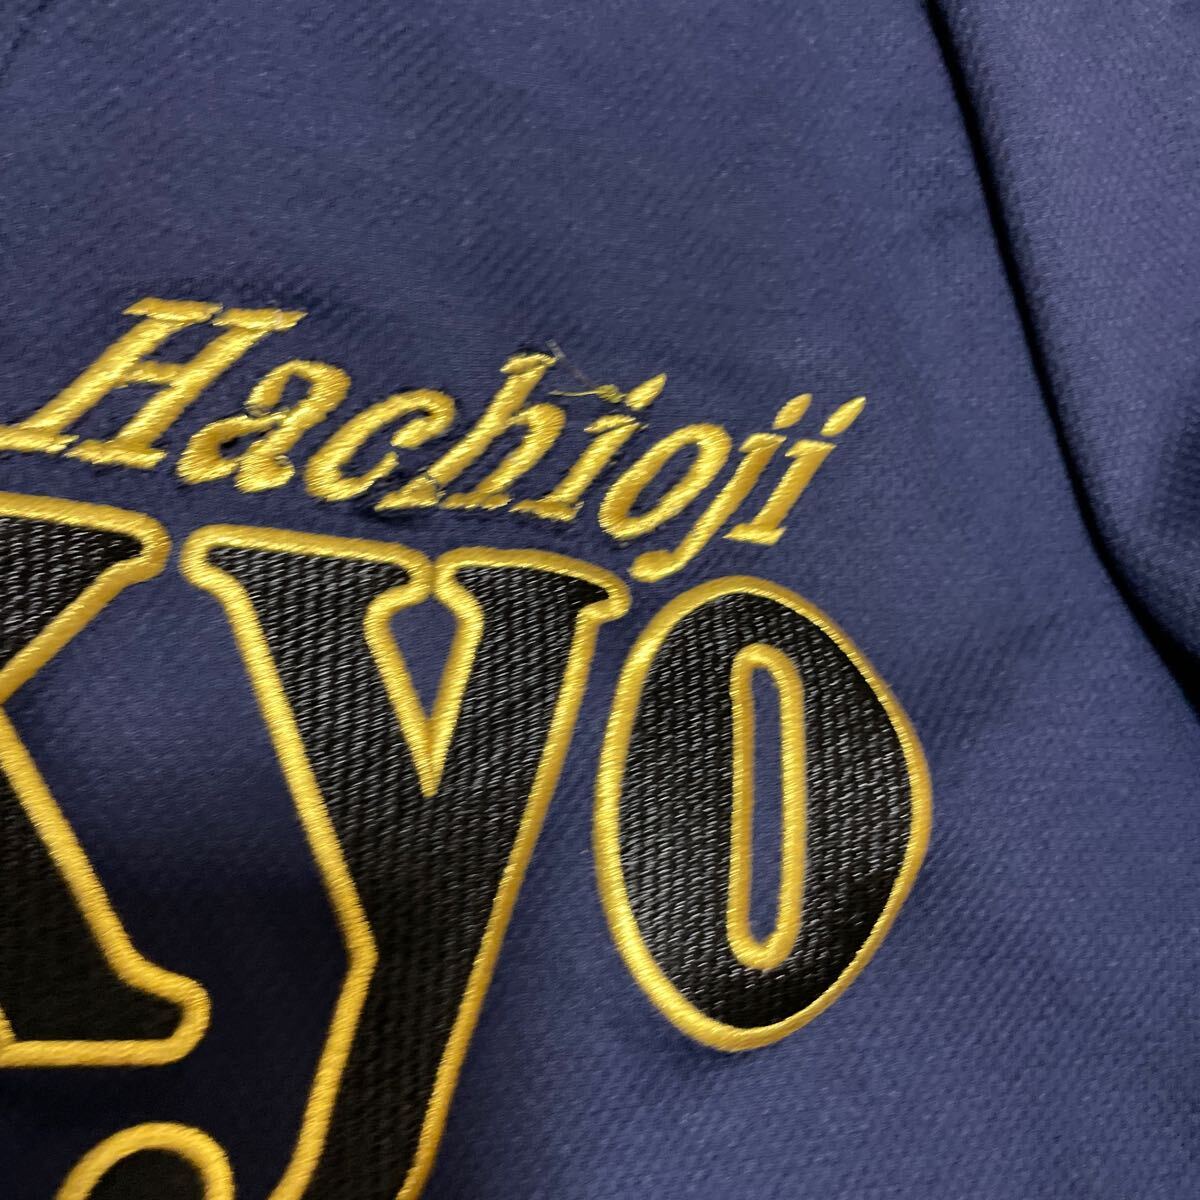 帝京高校 八王子 野球部 支給 着用 刺繍ロゴ アシックス asics ユニフォーム プラクティスシャツ Lサイズの画像6